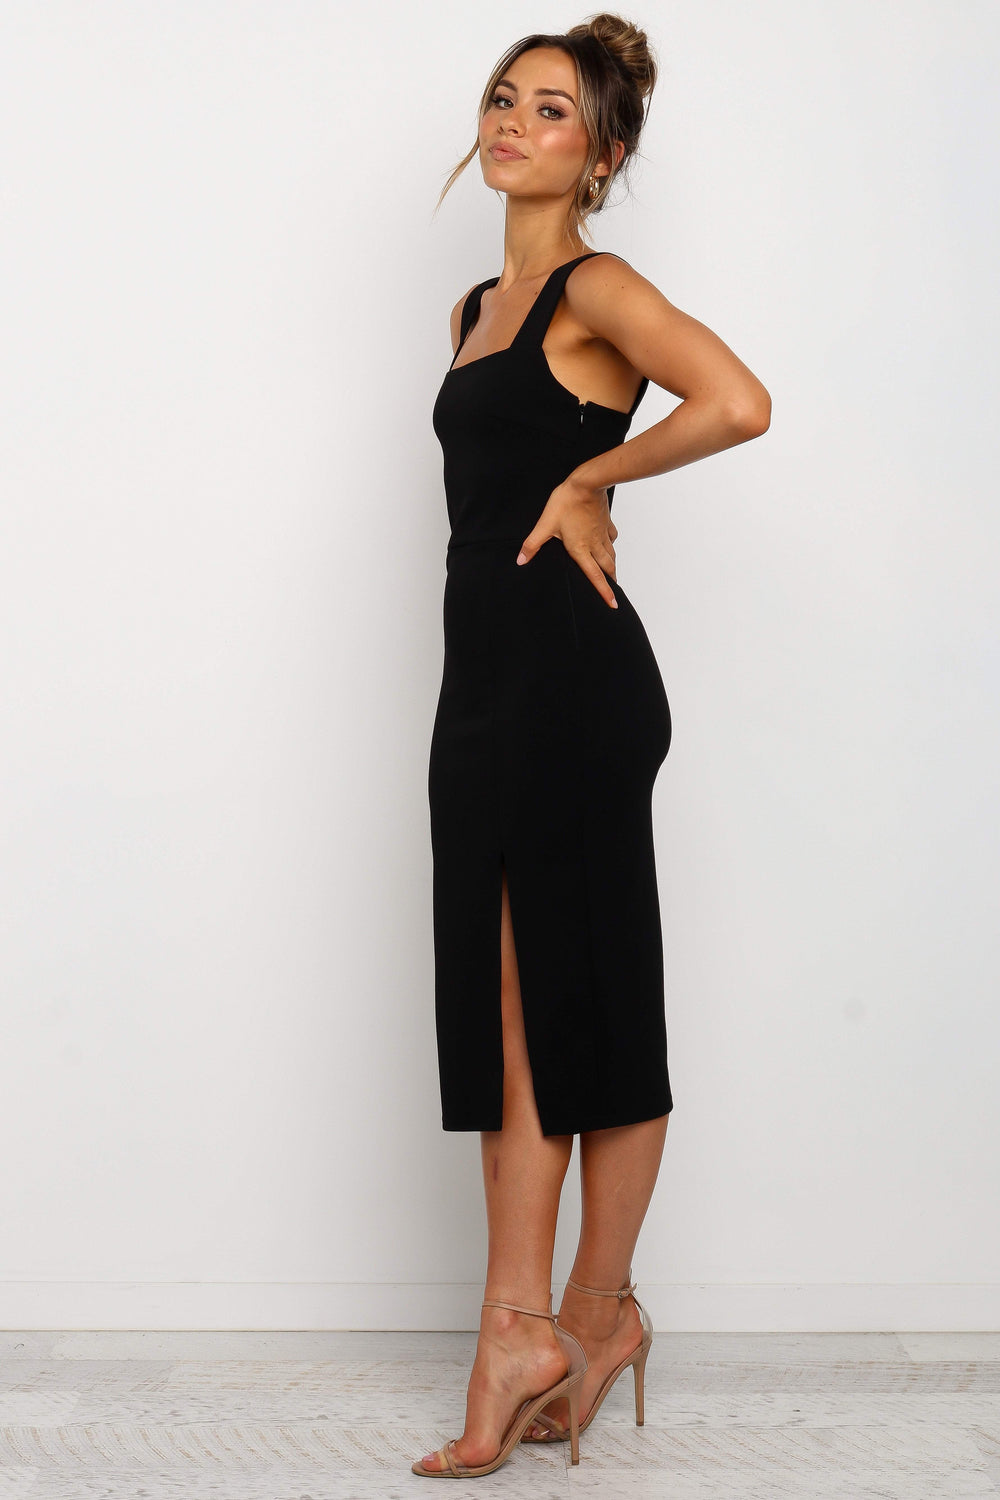 DRESSES Hyatt Dress - Black